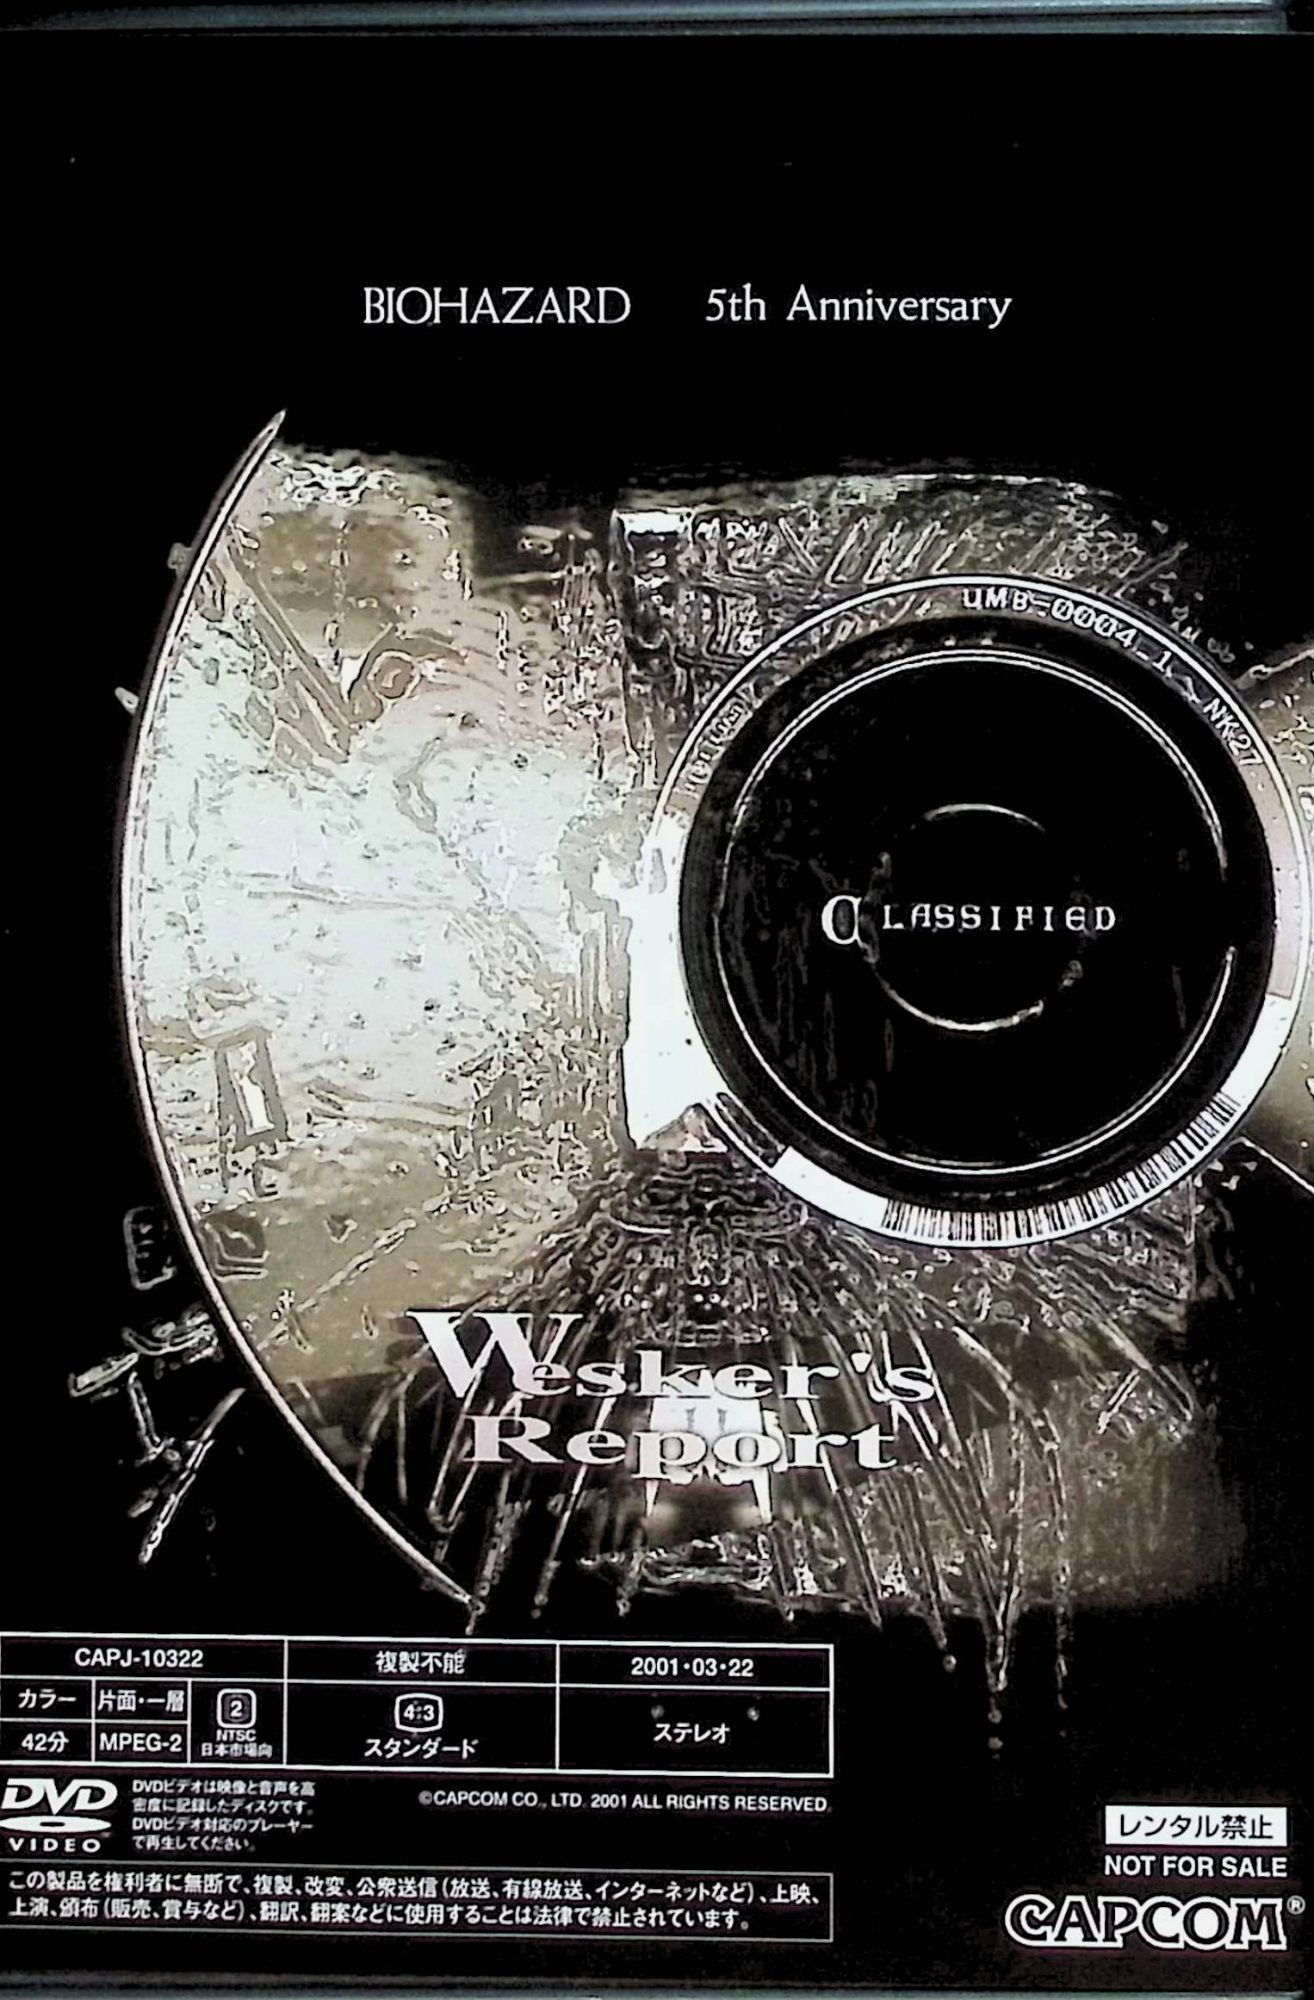 DVD BIOHAZARD Vaio hazard 5th Anniversary Wesker*s Report